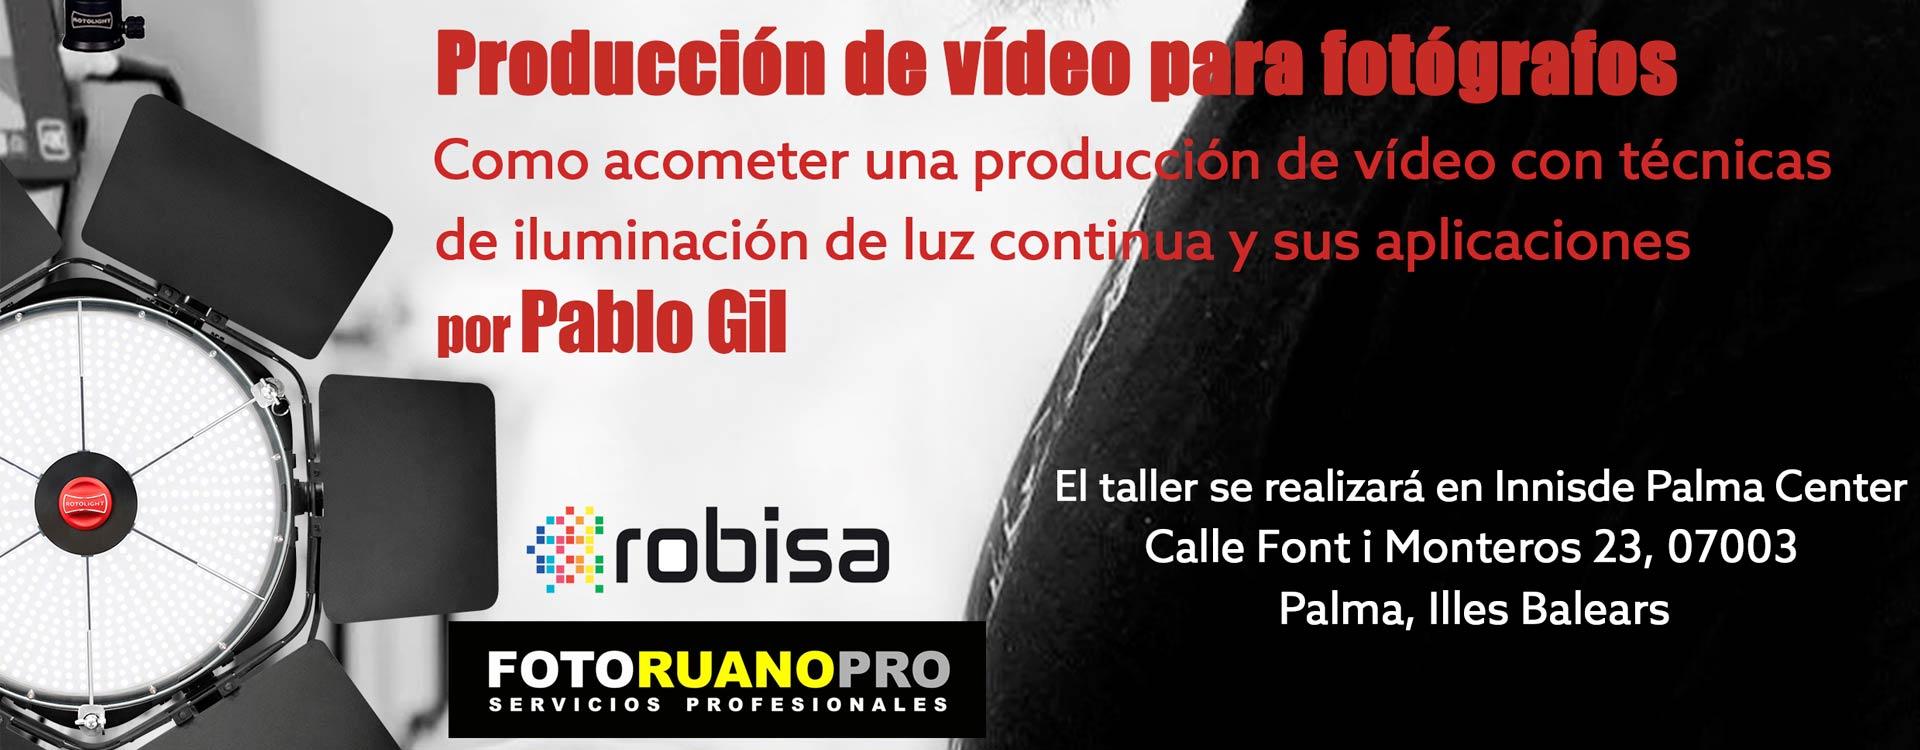 Taller Rotolight de producción de vídeo para fotógrafos con Pablo Gil